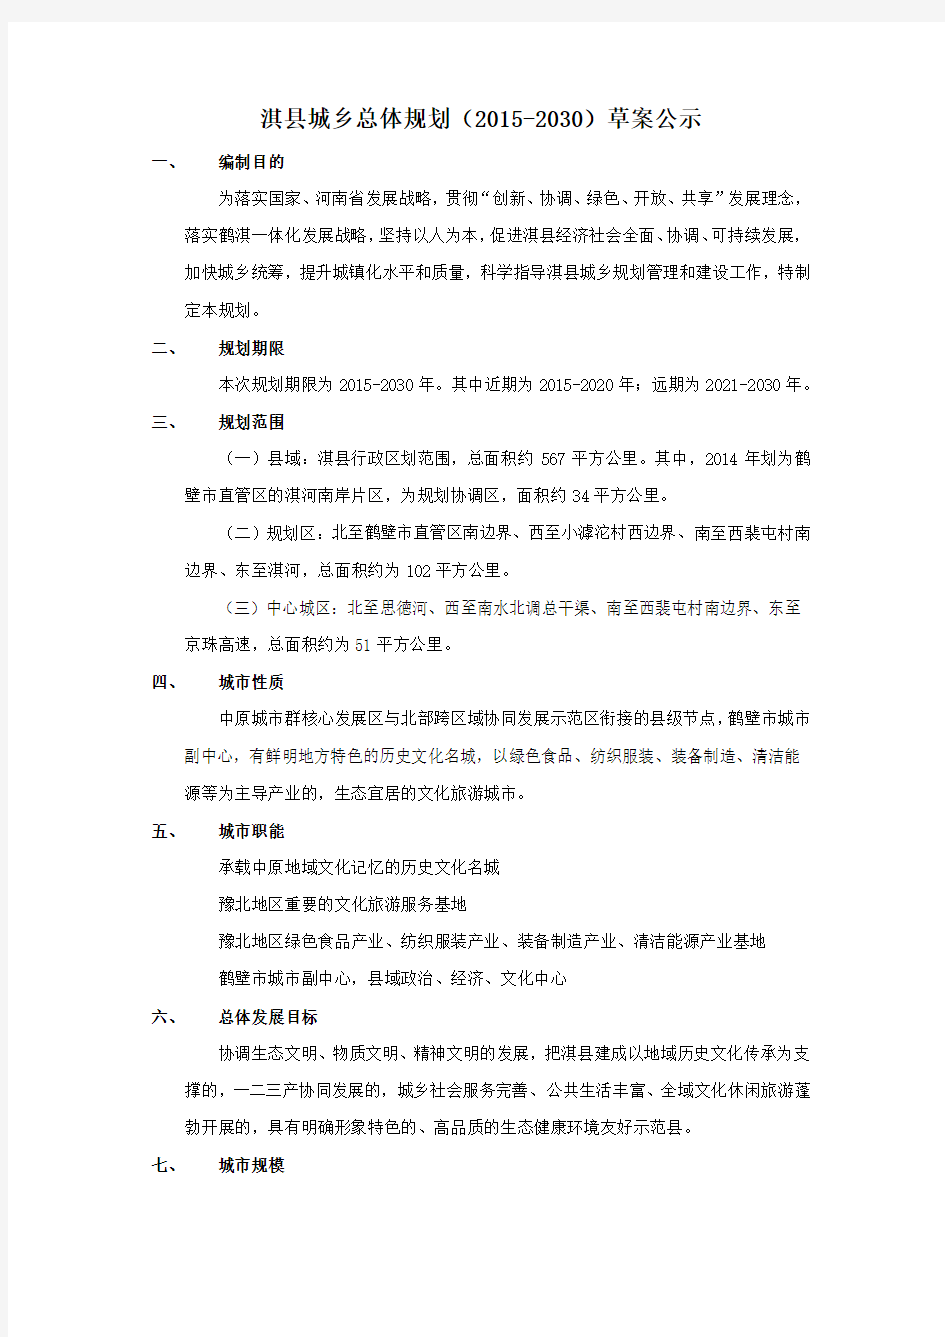 淇县城乡总体规划(2015-2030)草案公示